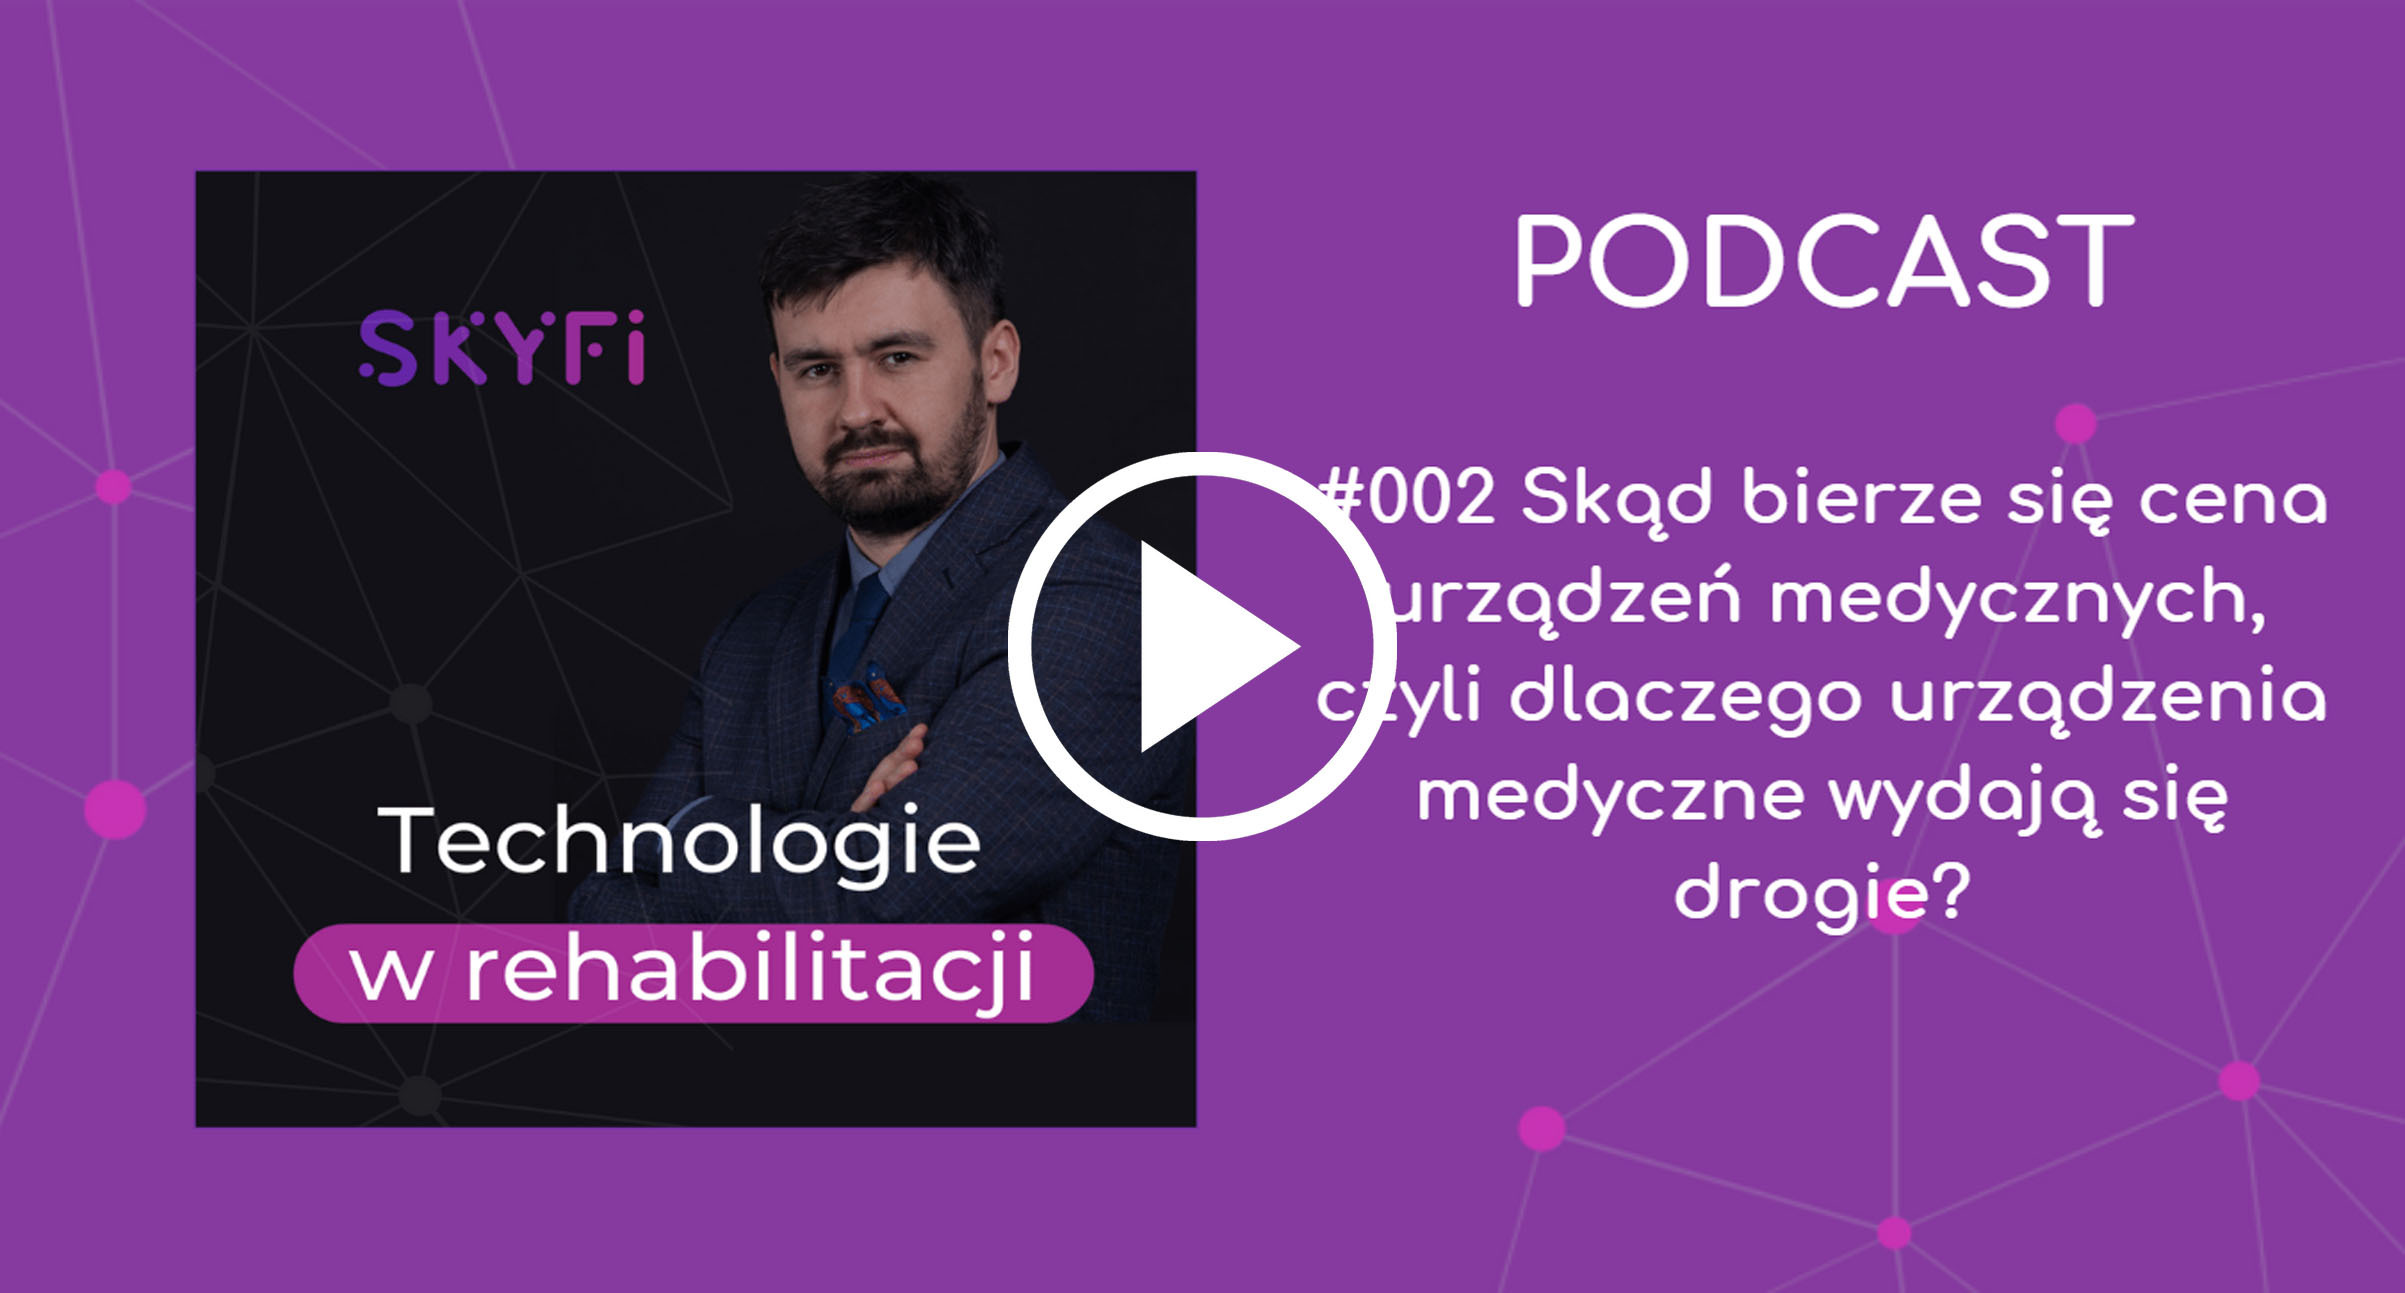 Podcast-2-cena-urządzeń-medycznych-ile-kosztują-roboty-do-rehabilitacji-Skyfi